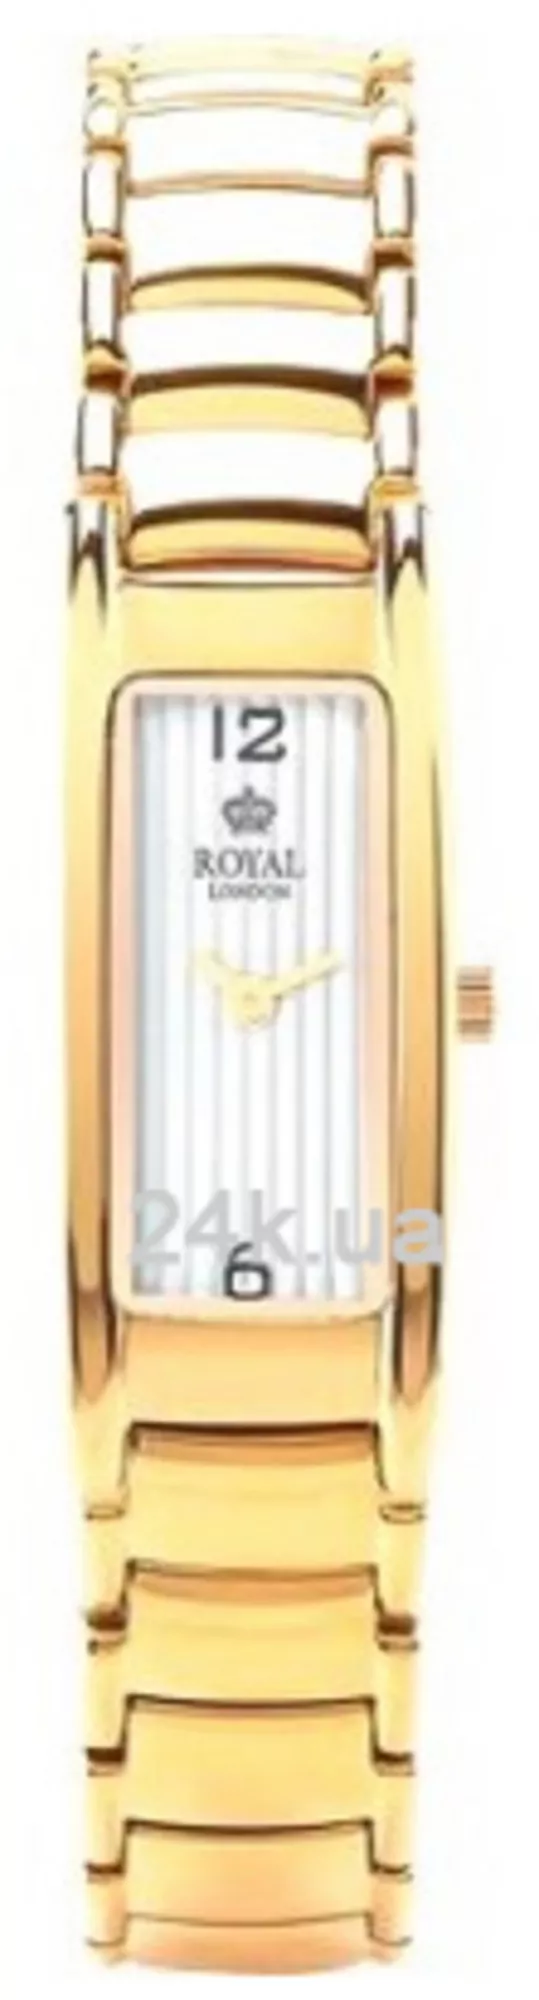 Часы Royal London 21245-03